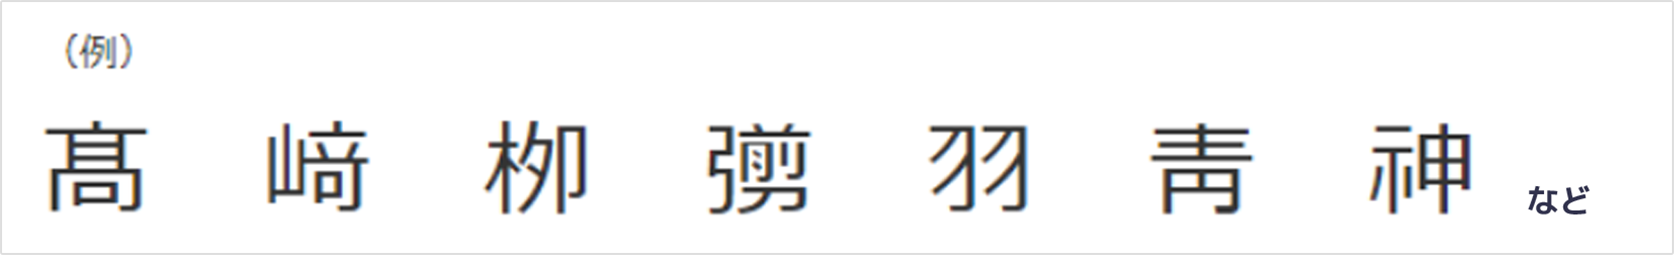 １．旧漢字・拡張漢字